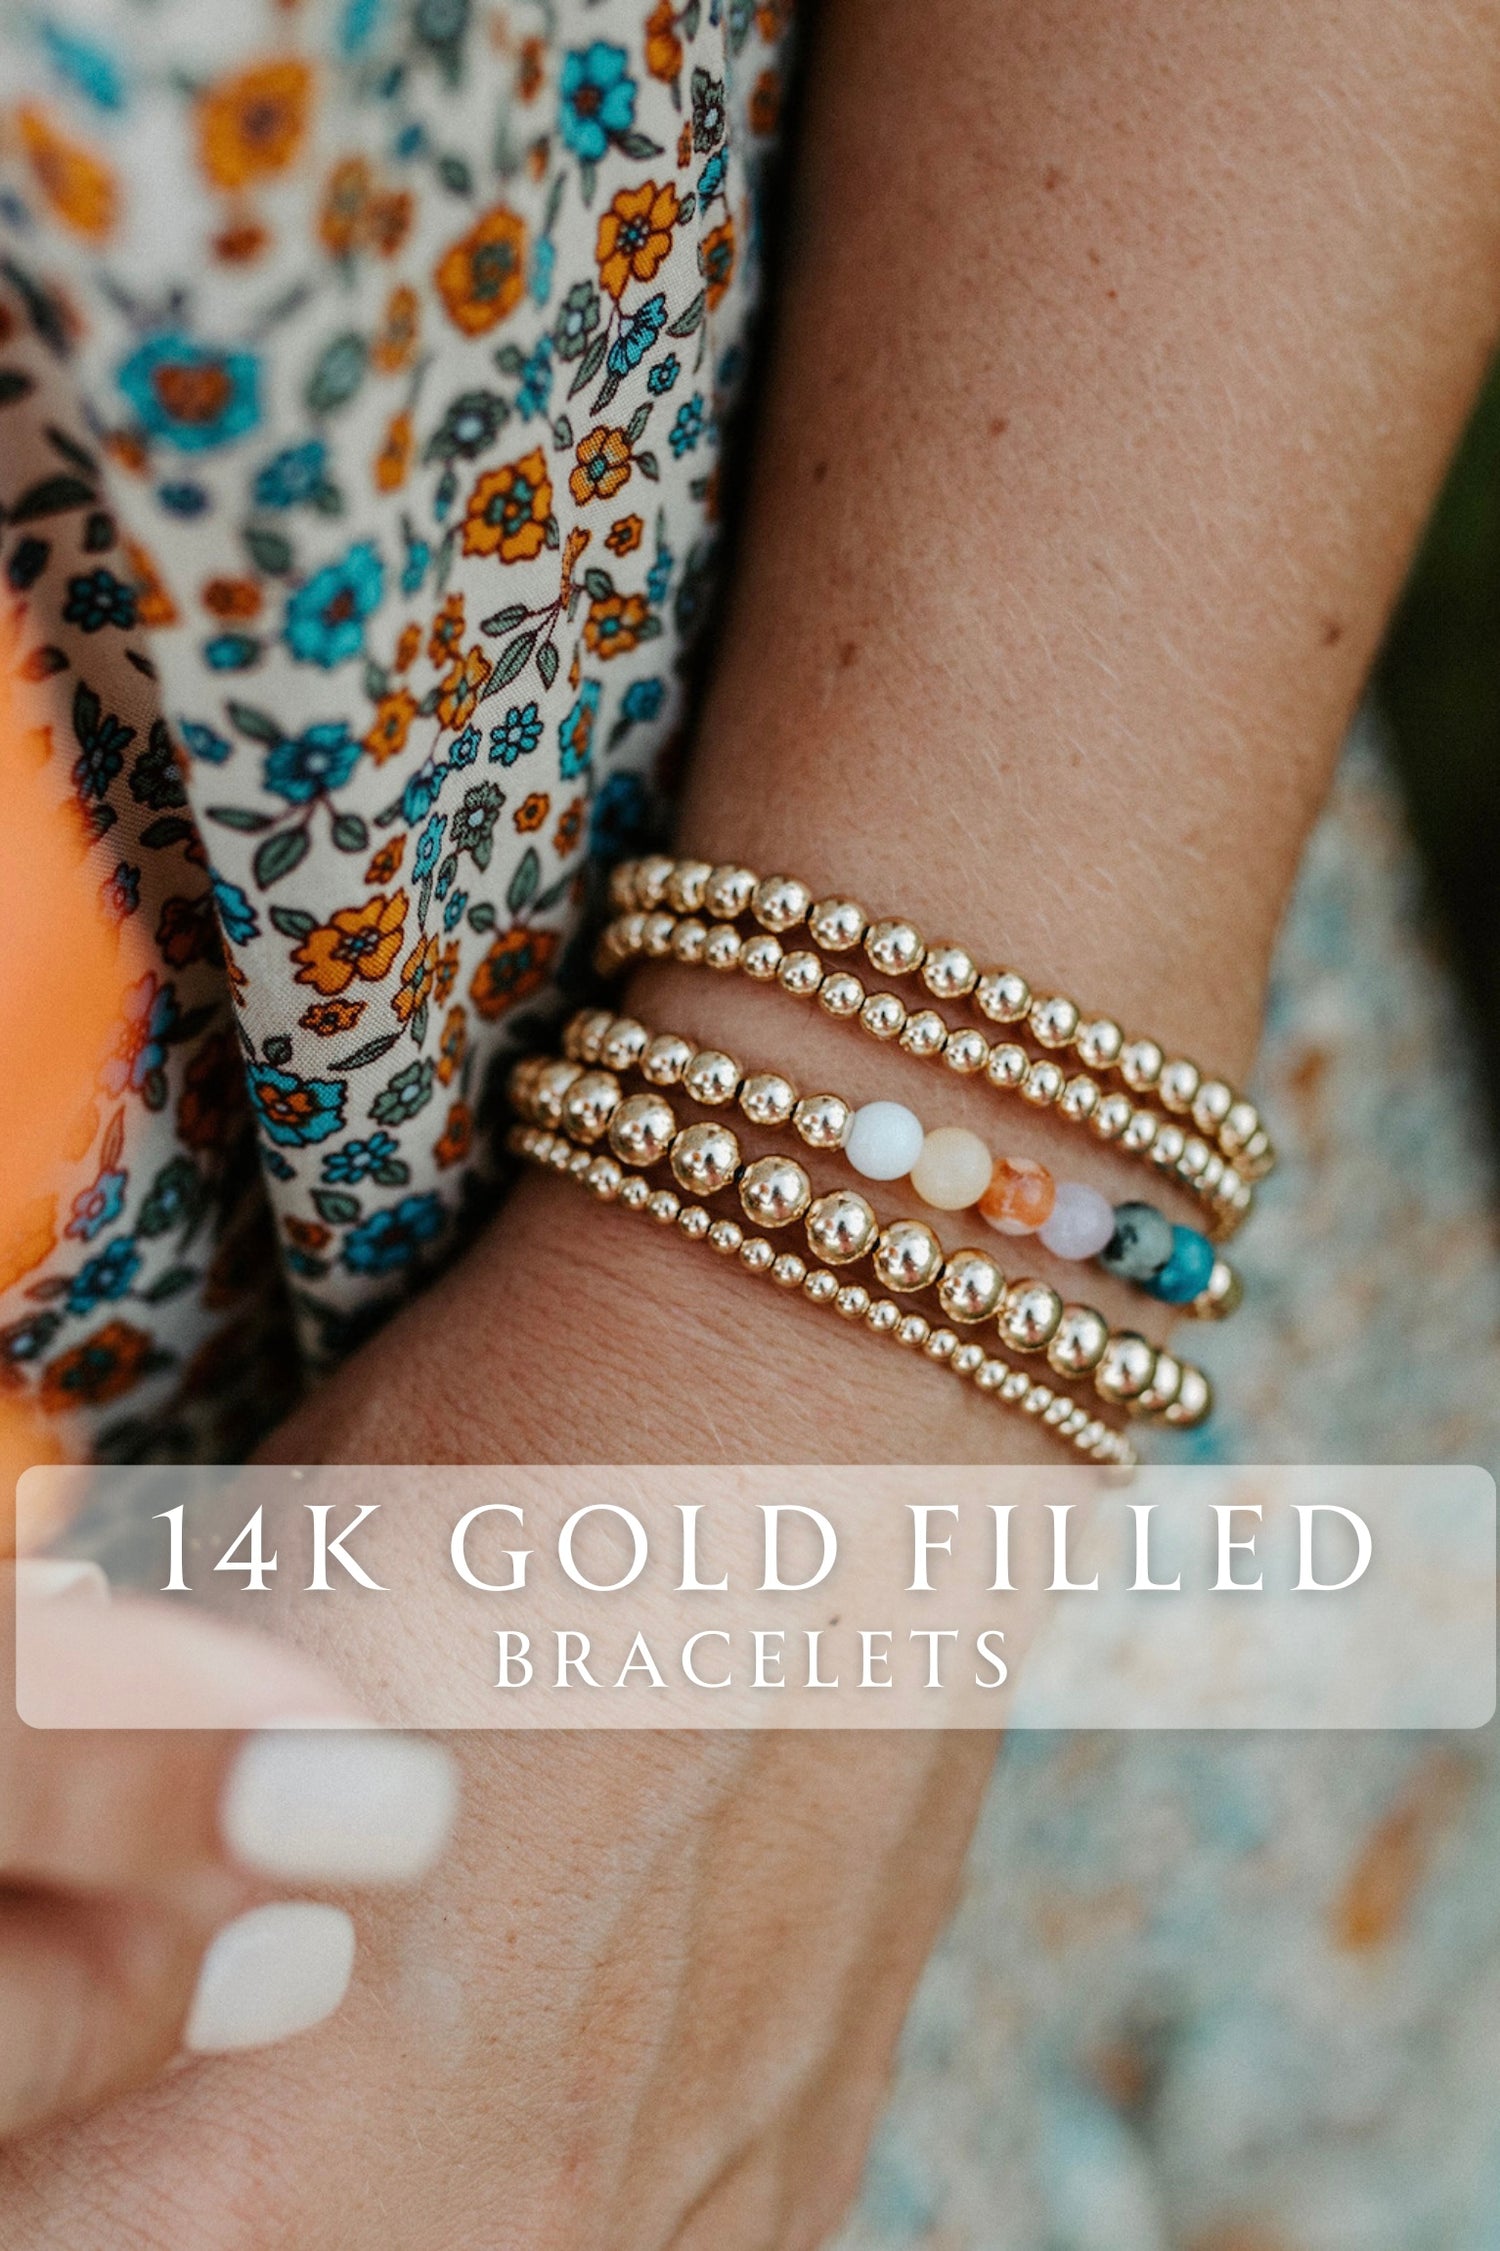 14k Gold Filled Bracelets